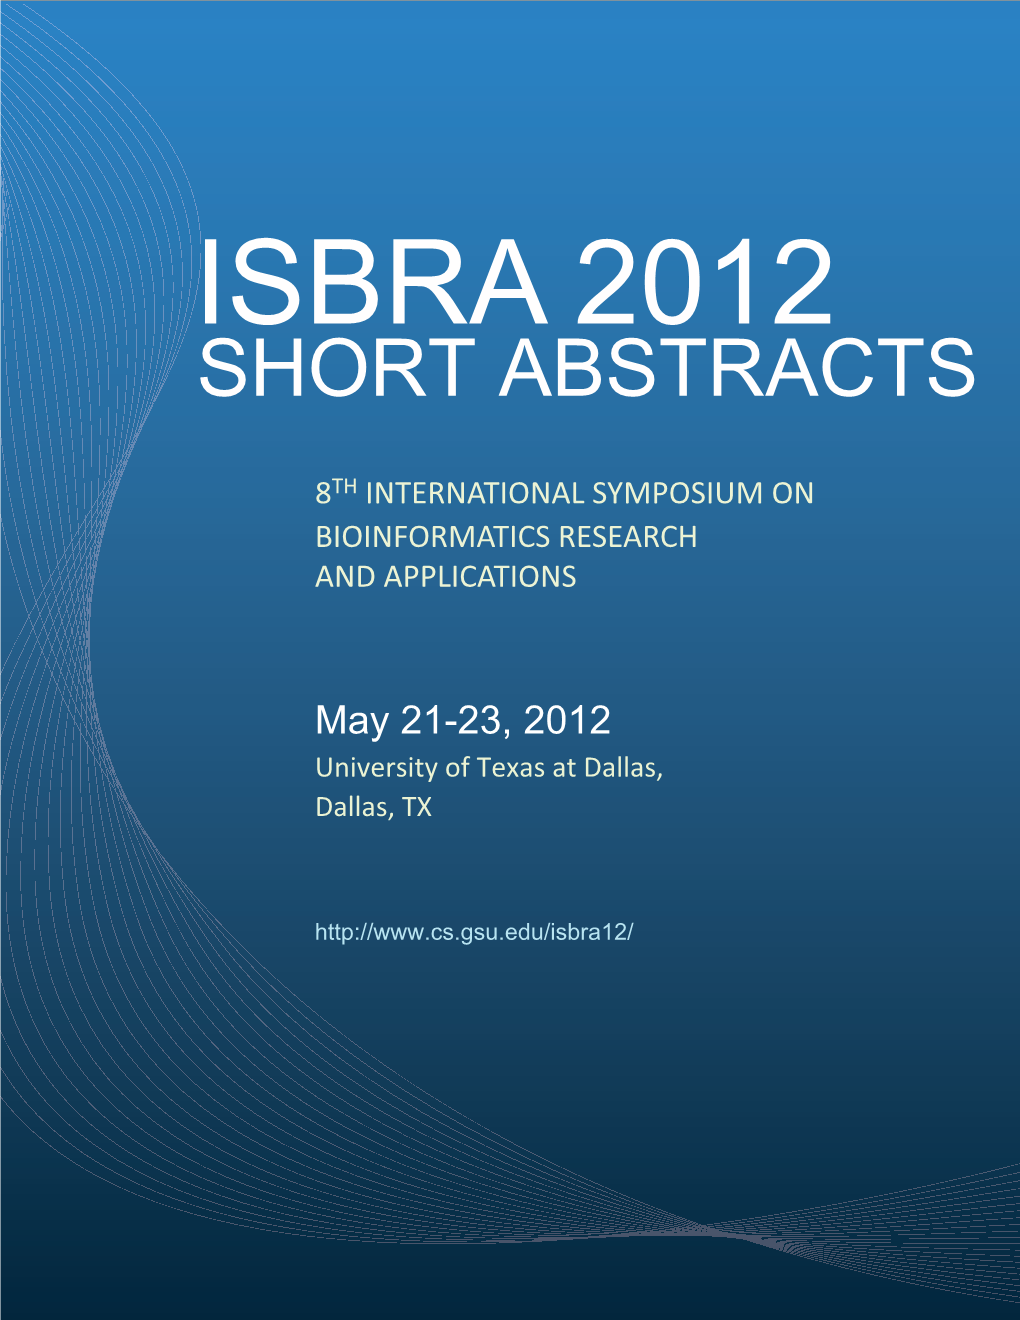 ISBRA 2012 Short Abstracts